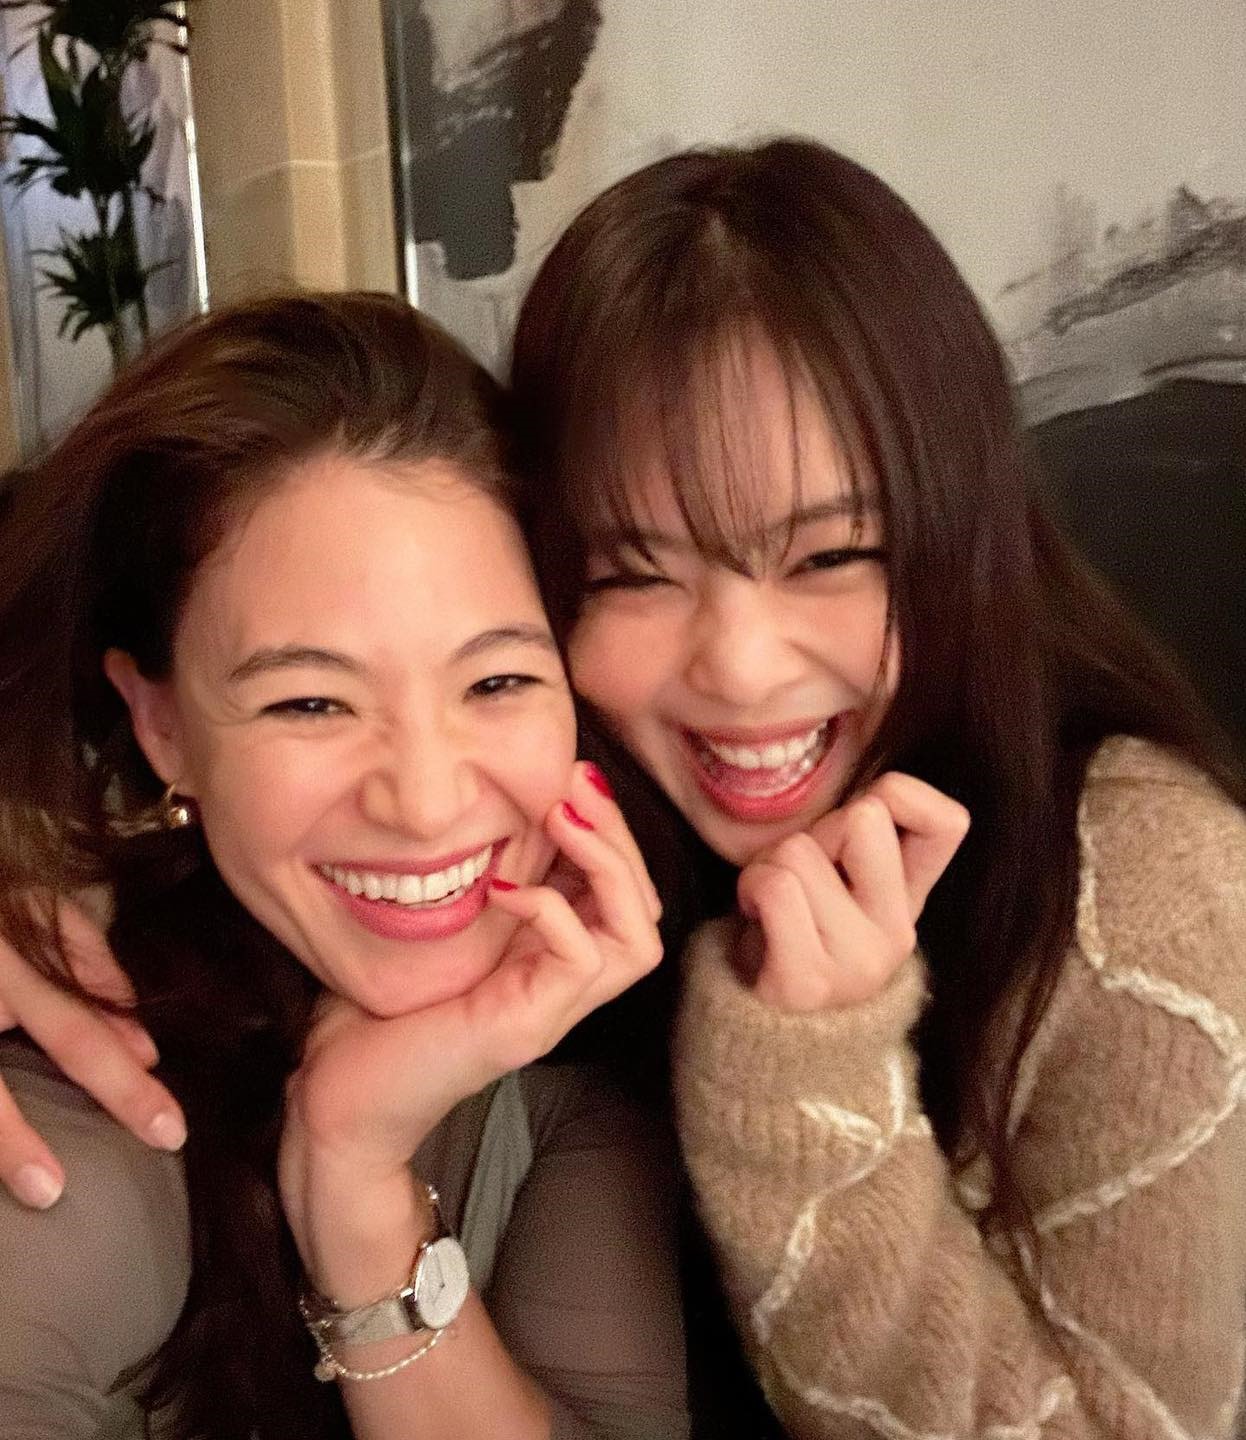 Nhìn những hình ảnh vui vẻ của Jennie, nhiều người cũng thở phào vì dường như cô không mấy bận tâm tới những gì đang diễn ra. Ảnh: Instagram olivia_in_korea.